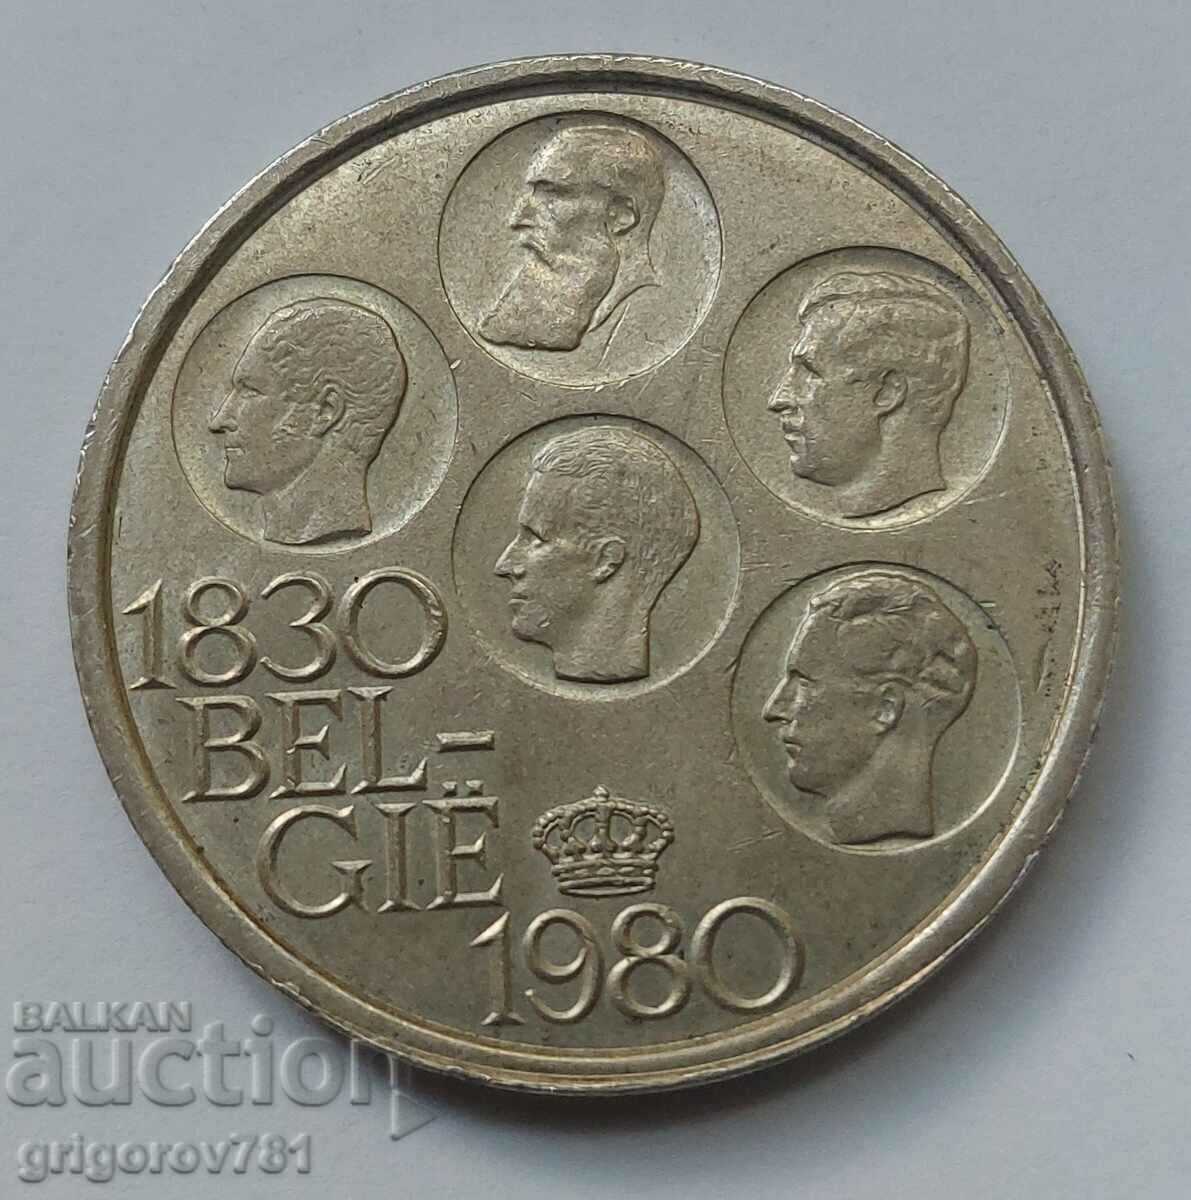 500 francs silver Belgium 1980 - silver coin